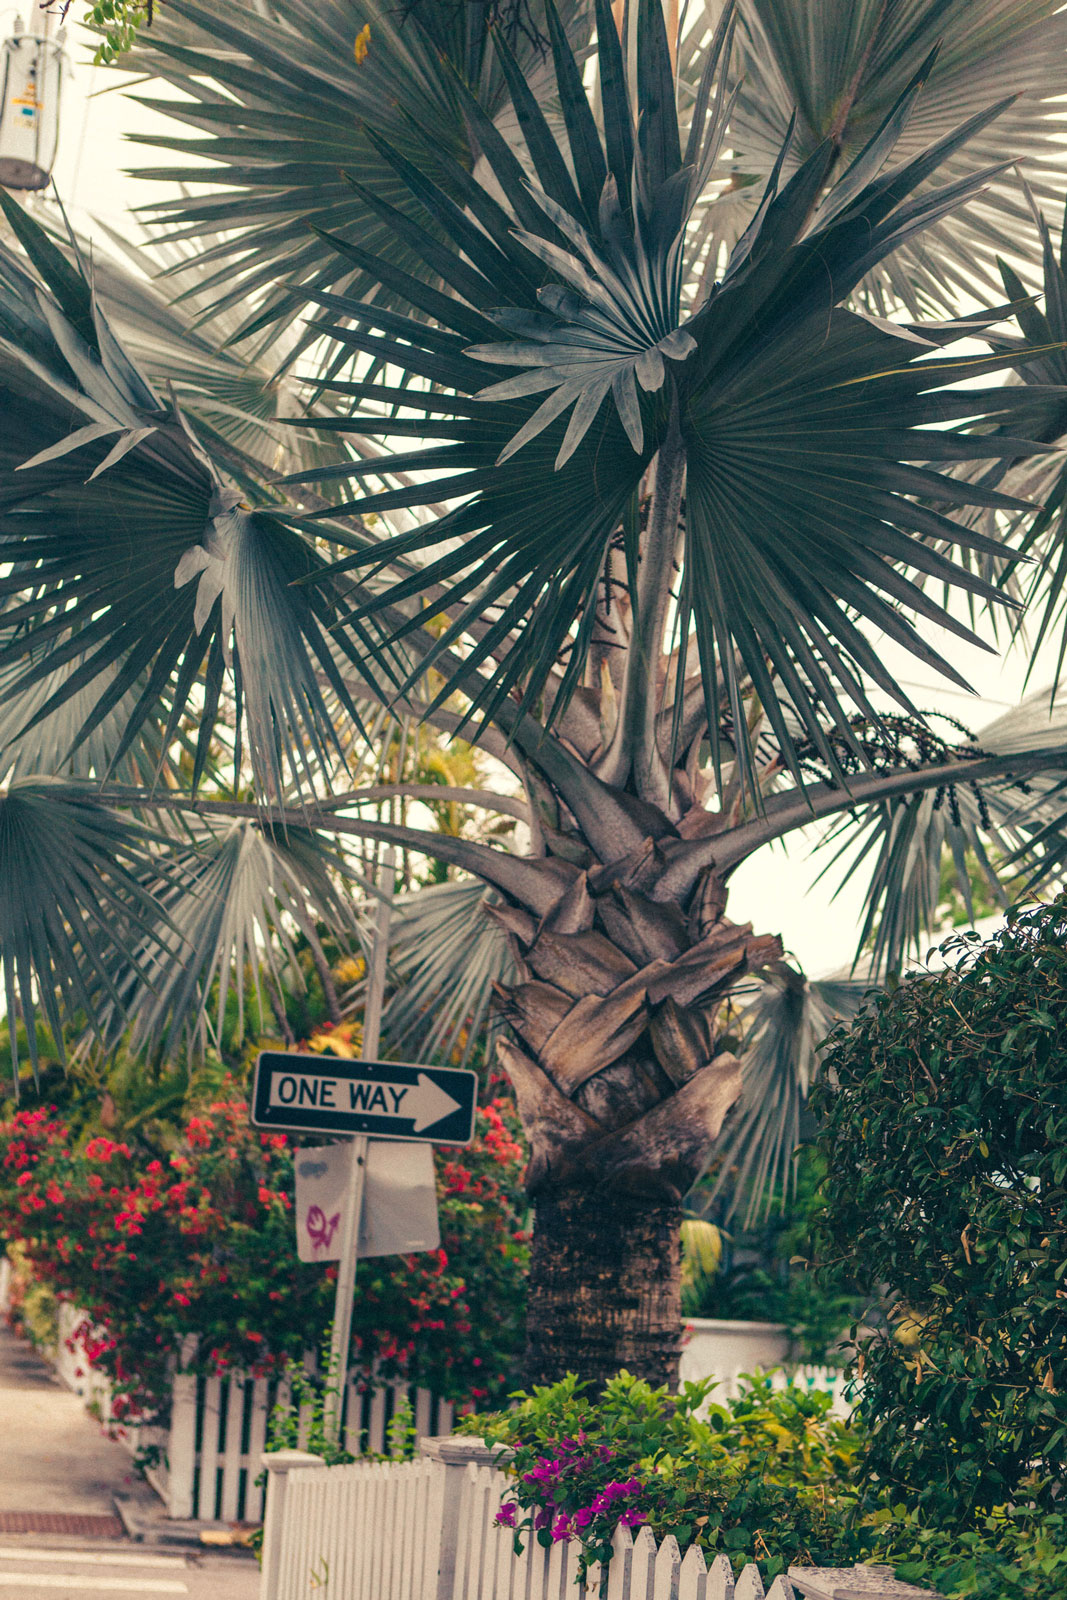 Florida Part 1: FLORIDA KEYS - Der erste Teil unseres Roadtrips führte uns auf die wunderschönen Florida Keys, bestehend aus über 200 Koralleninseln. Thomas Brand Sarah Bugar - brand4art Ebersberg München - Fotografie Cinemagraph Fotograf Fotodesign